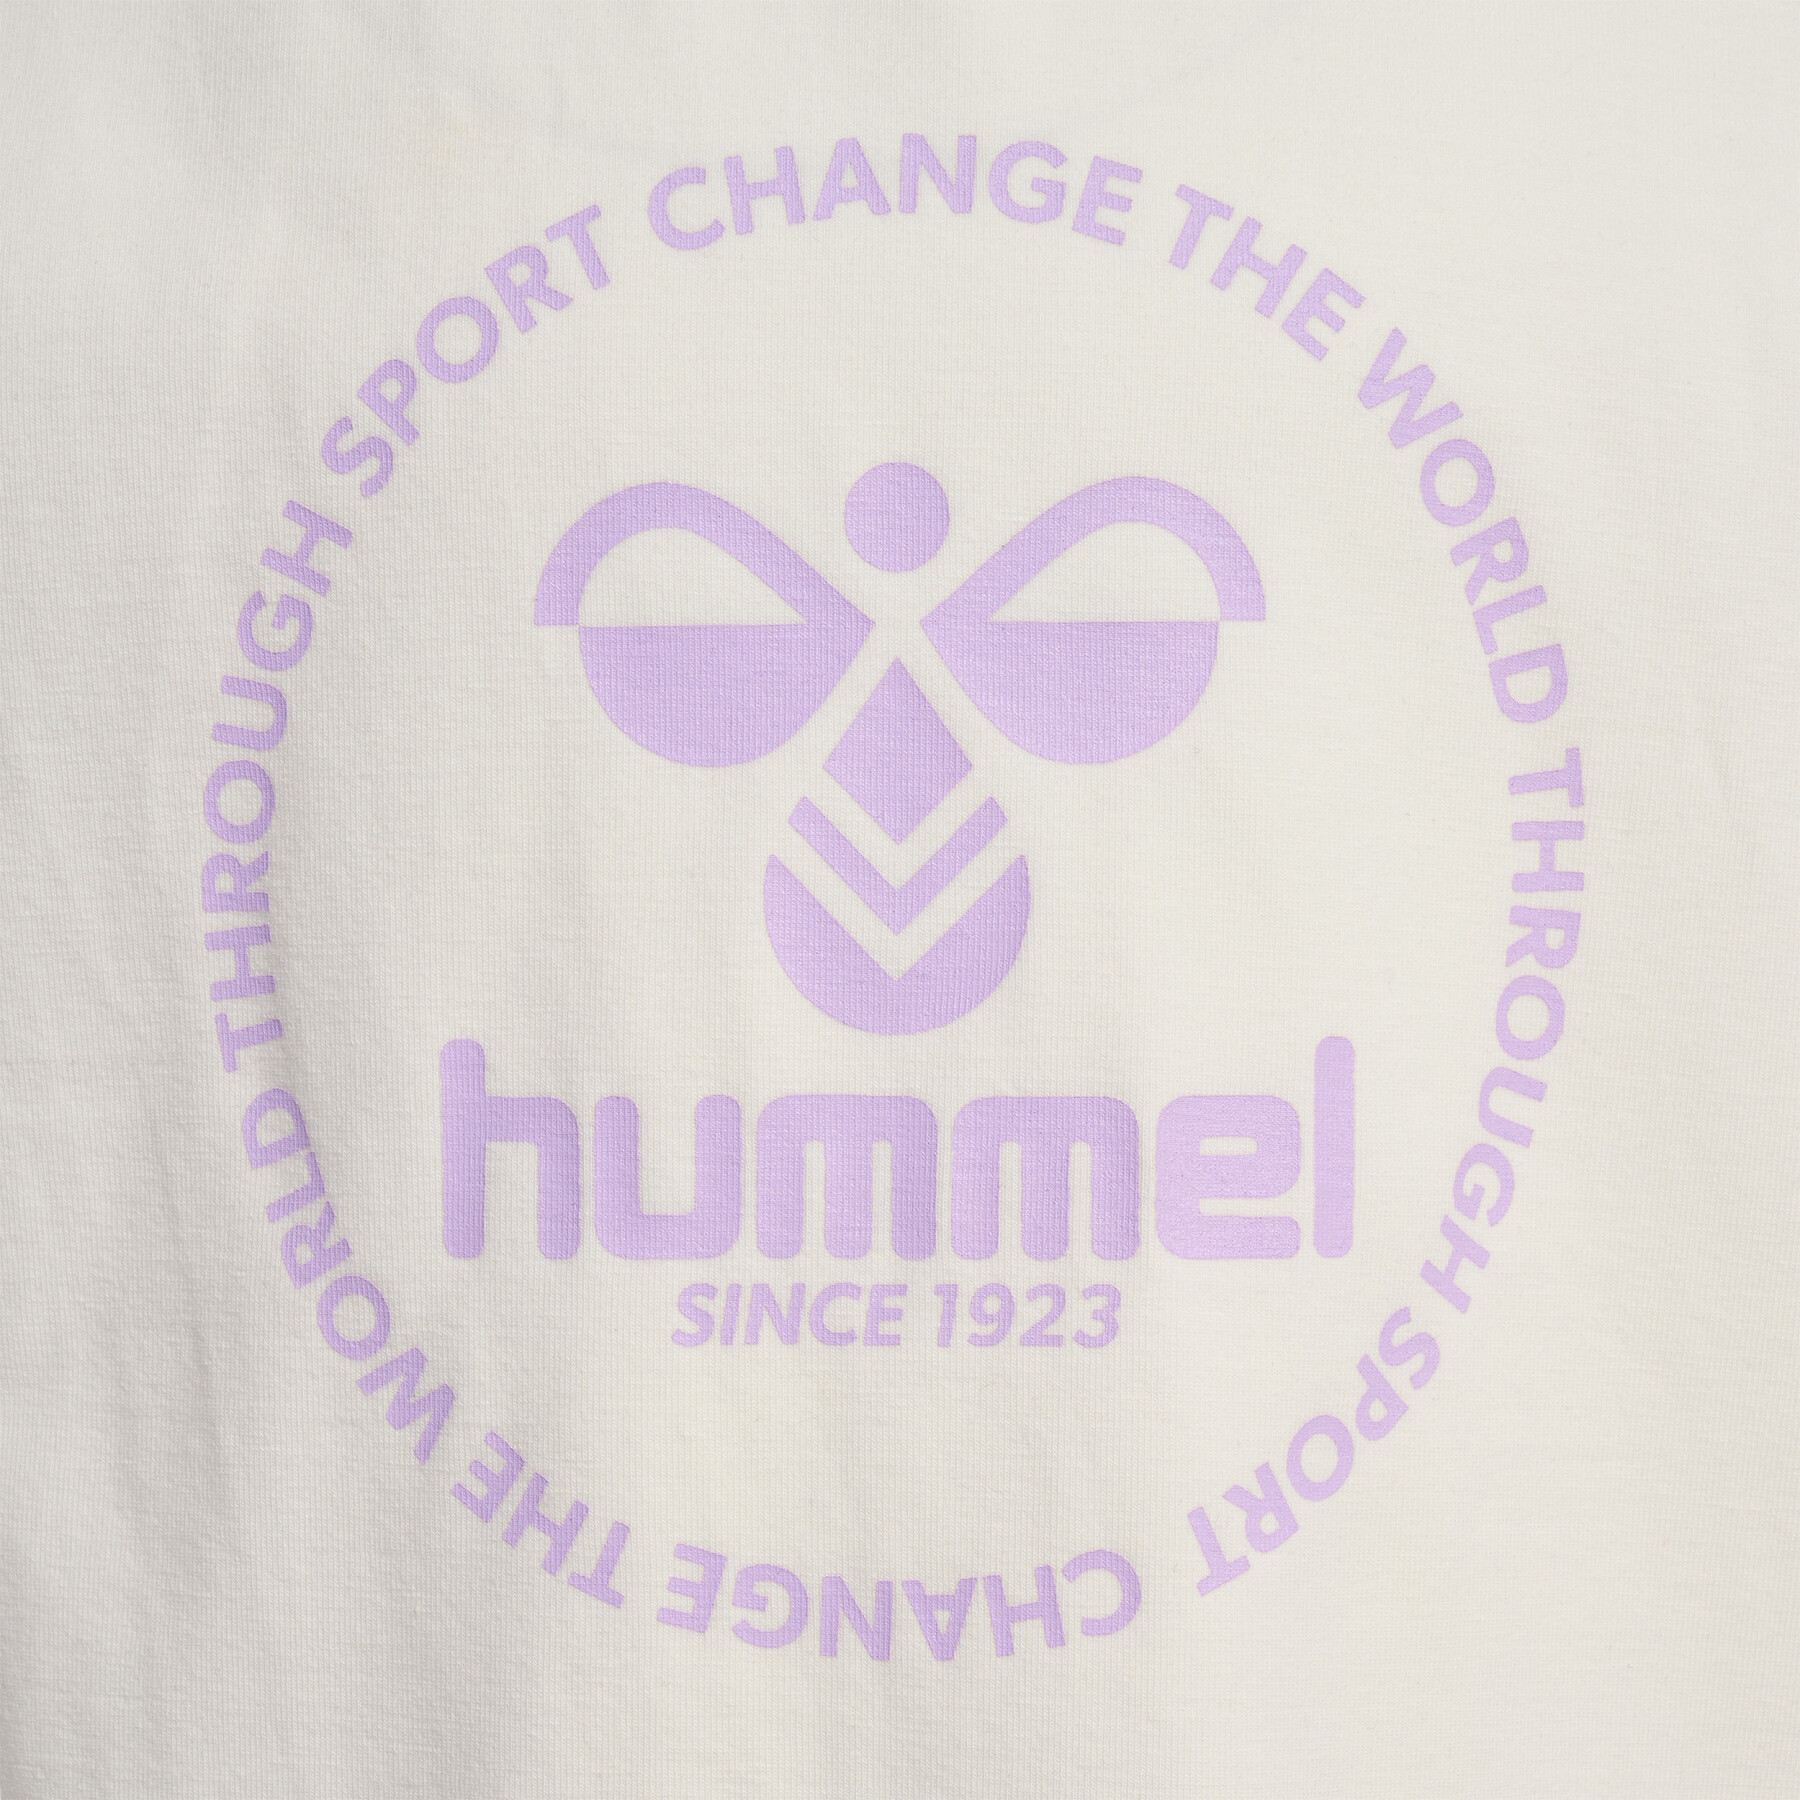 T-shirt de rapariga Hummel Jumpy